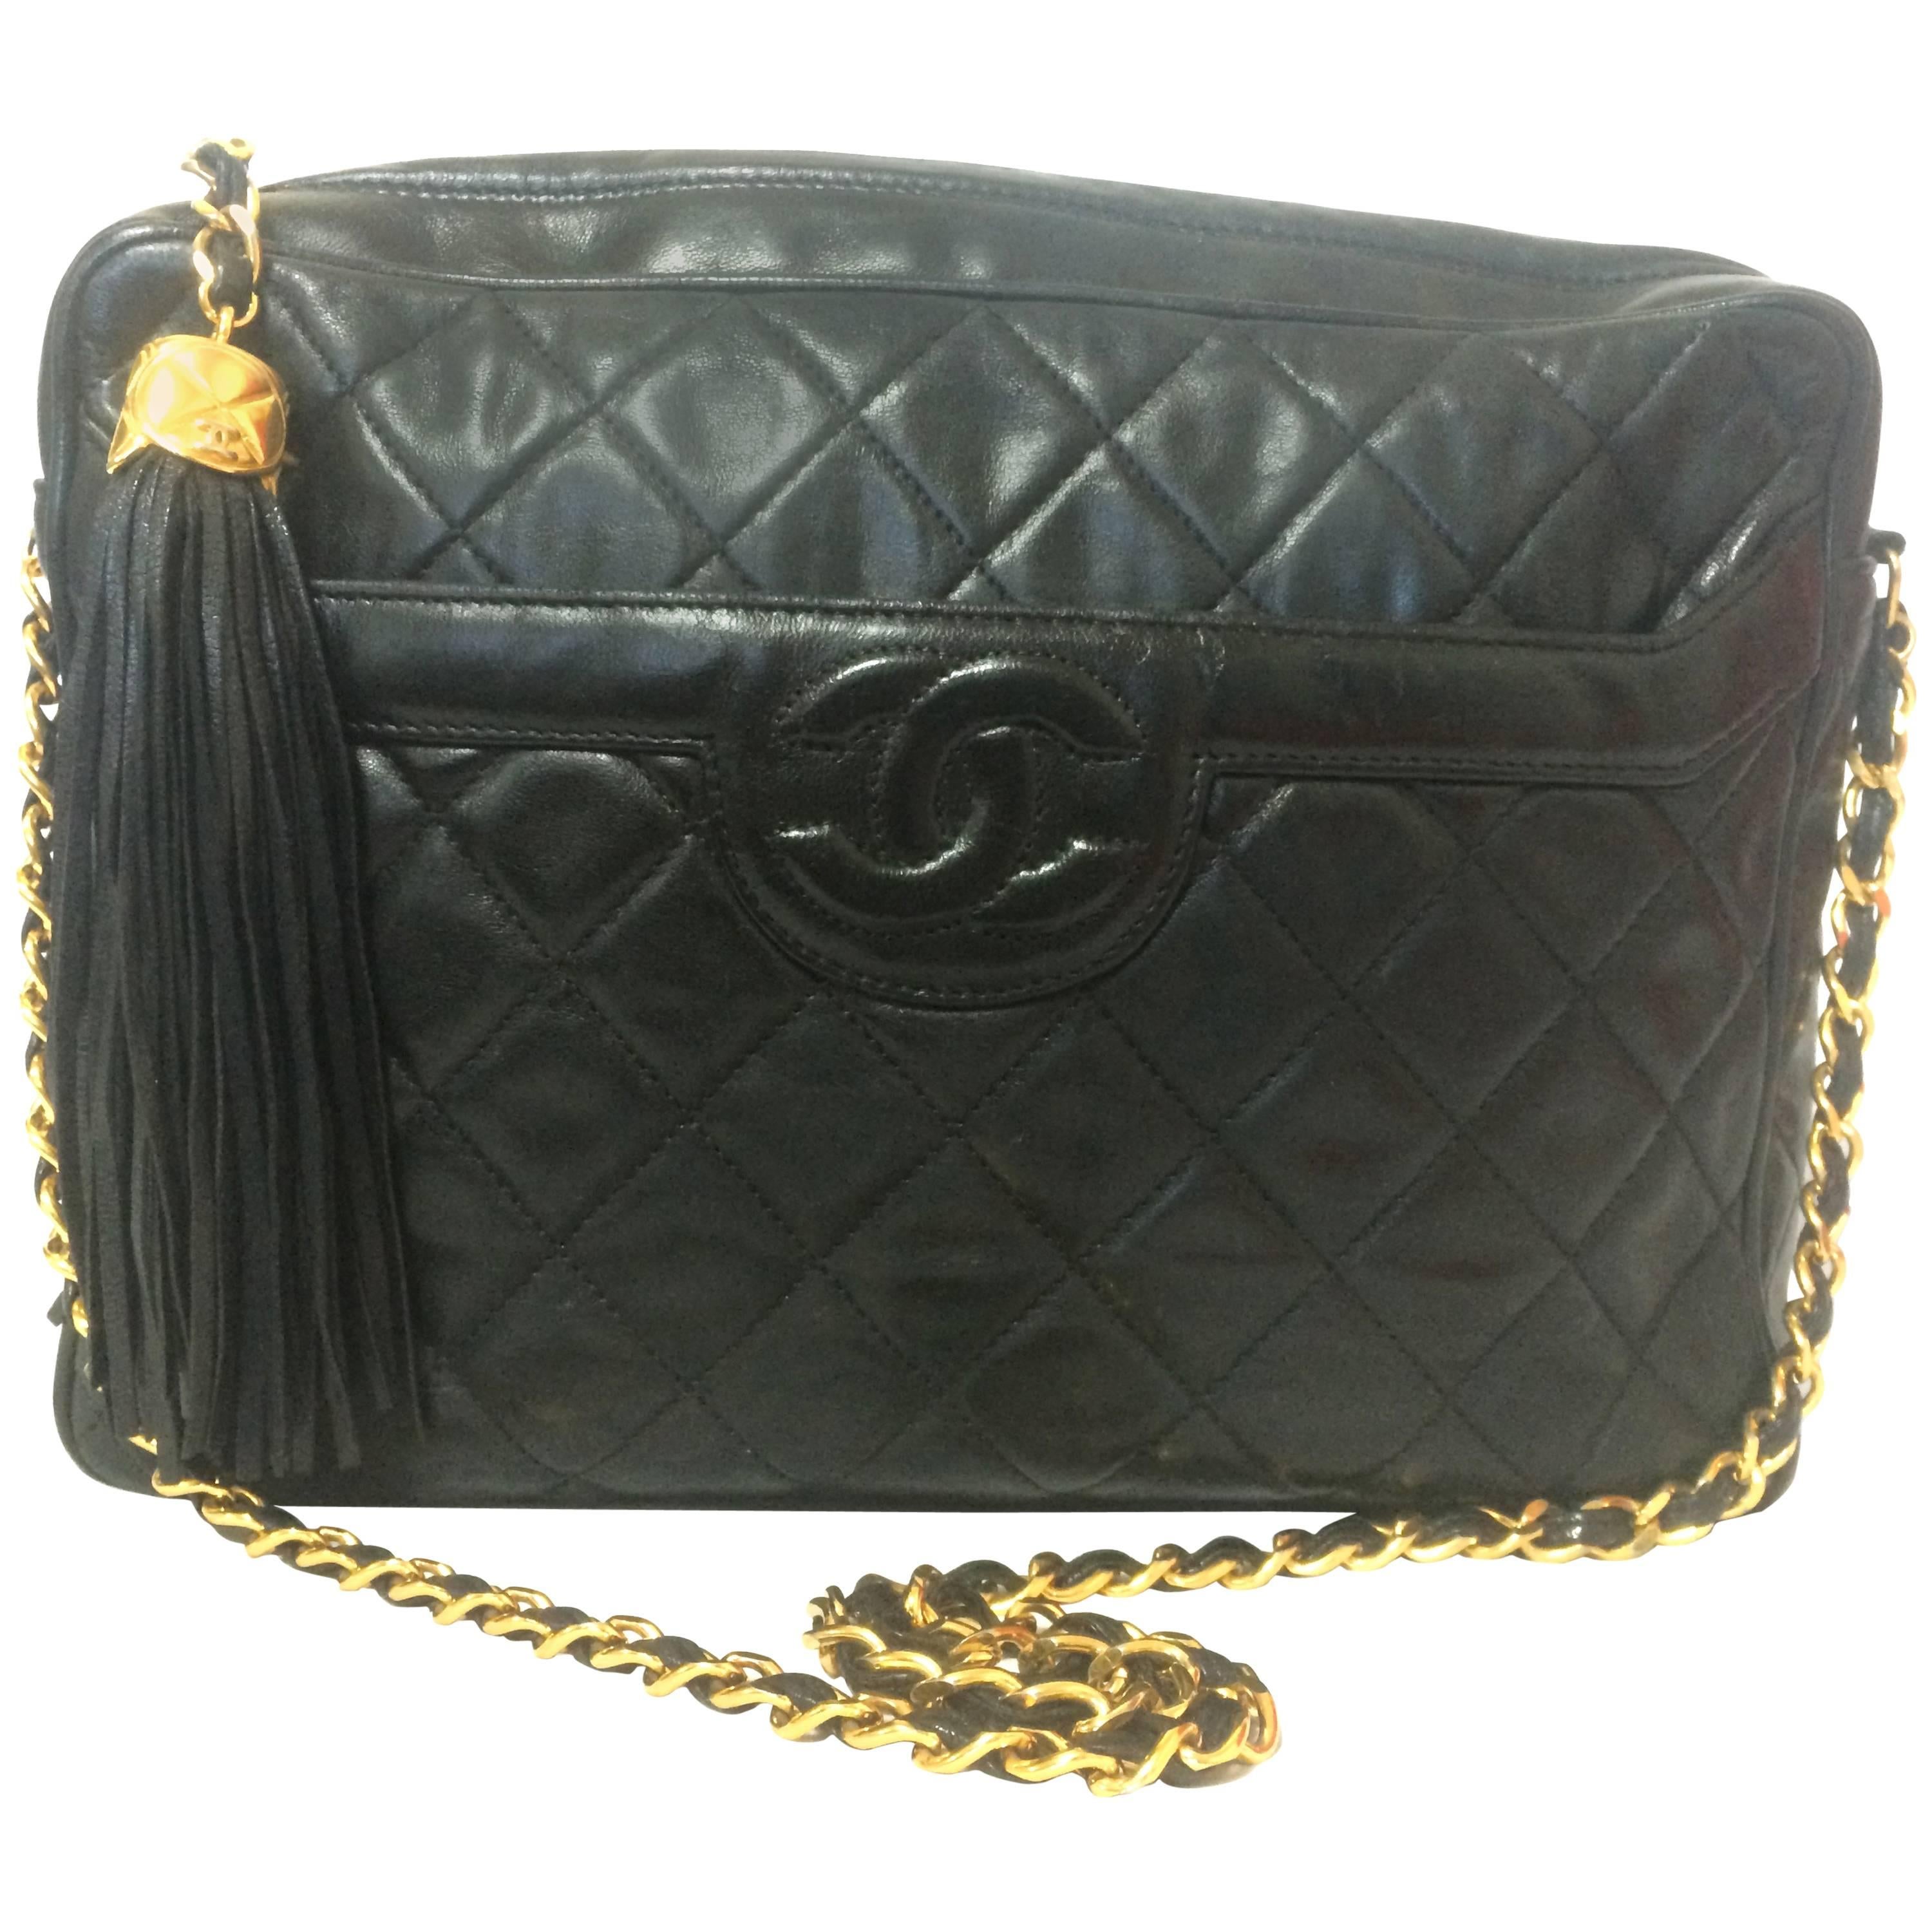 Vintage Chanel black large camera bag style chain shoulder bag with a CC fringe